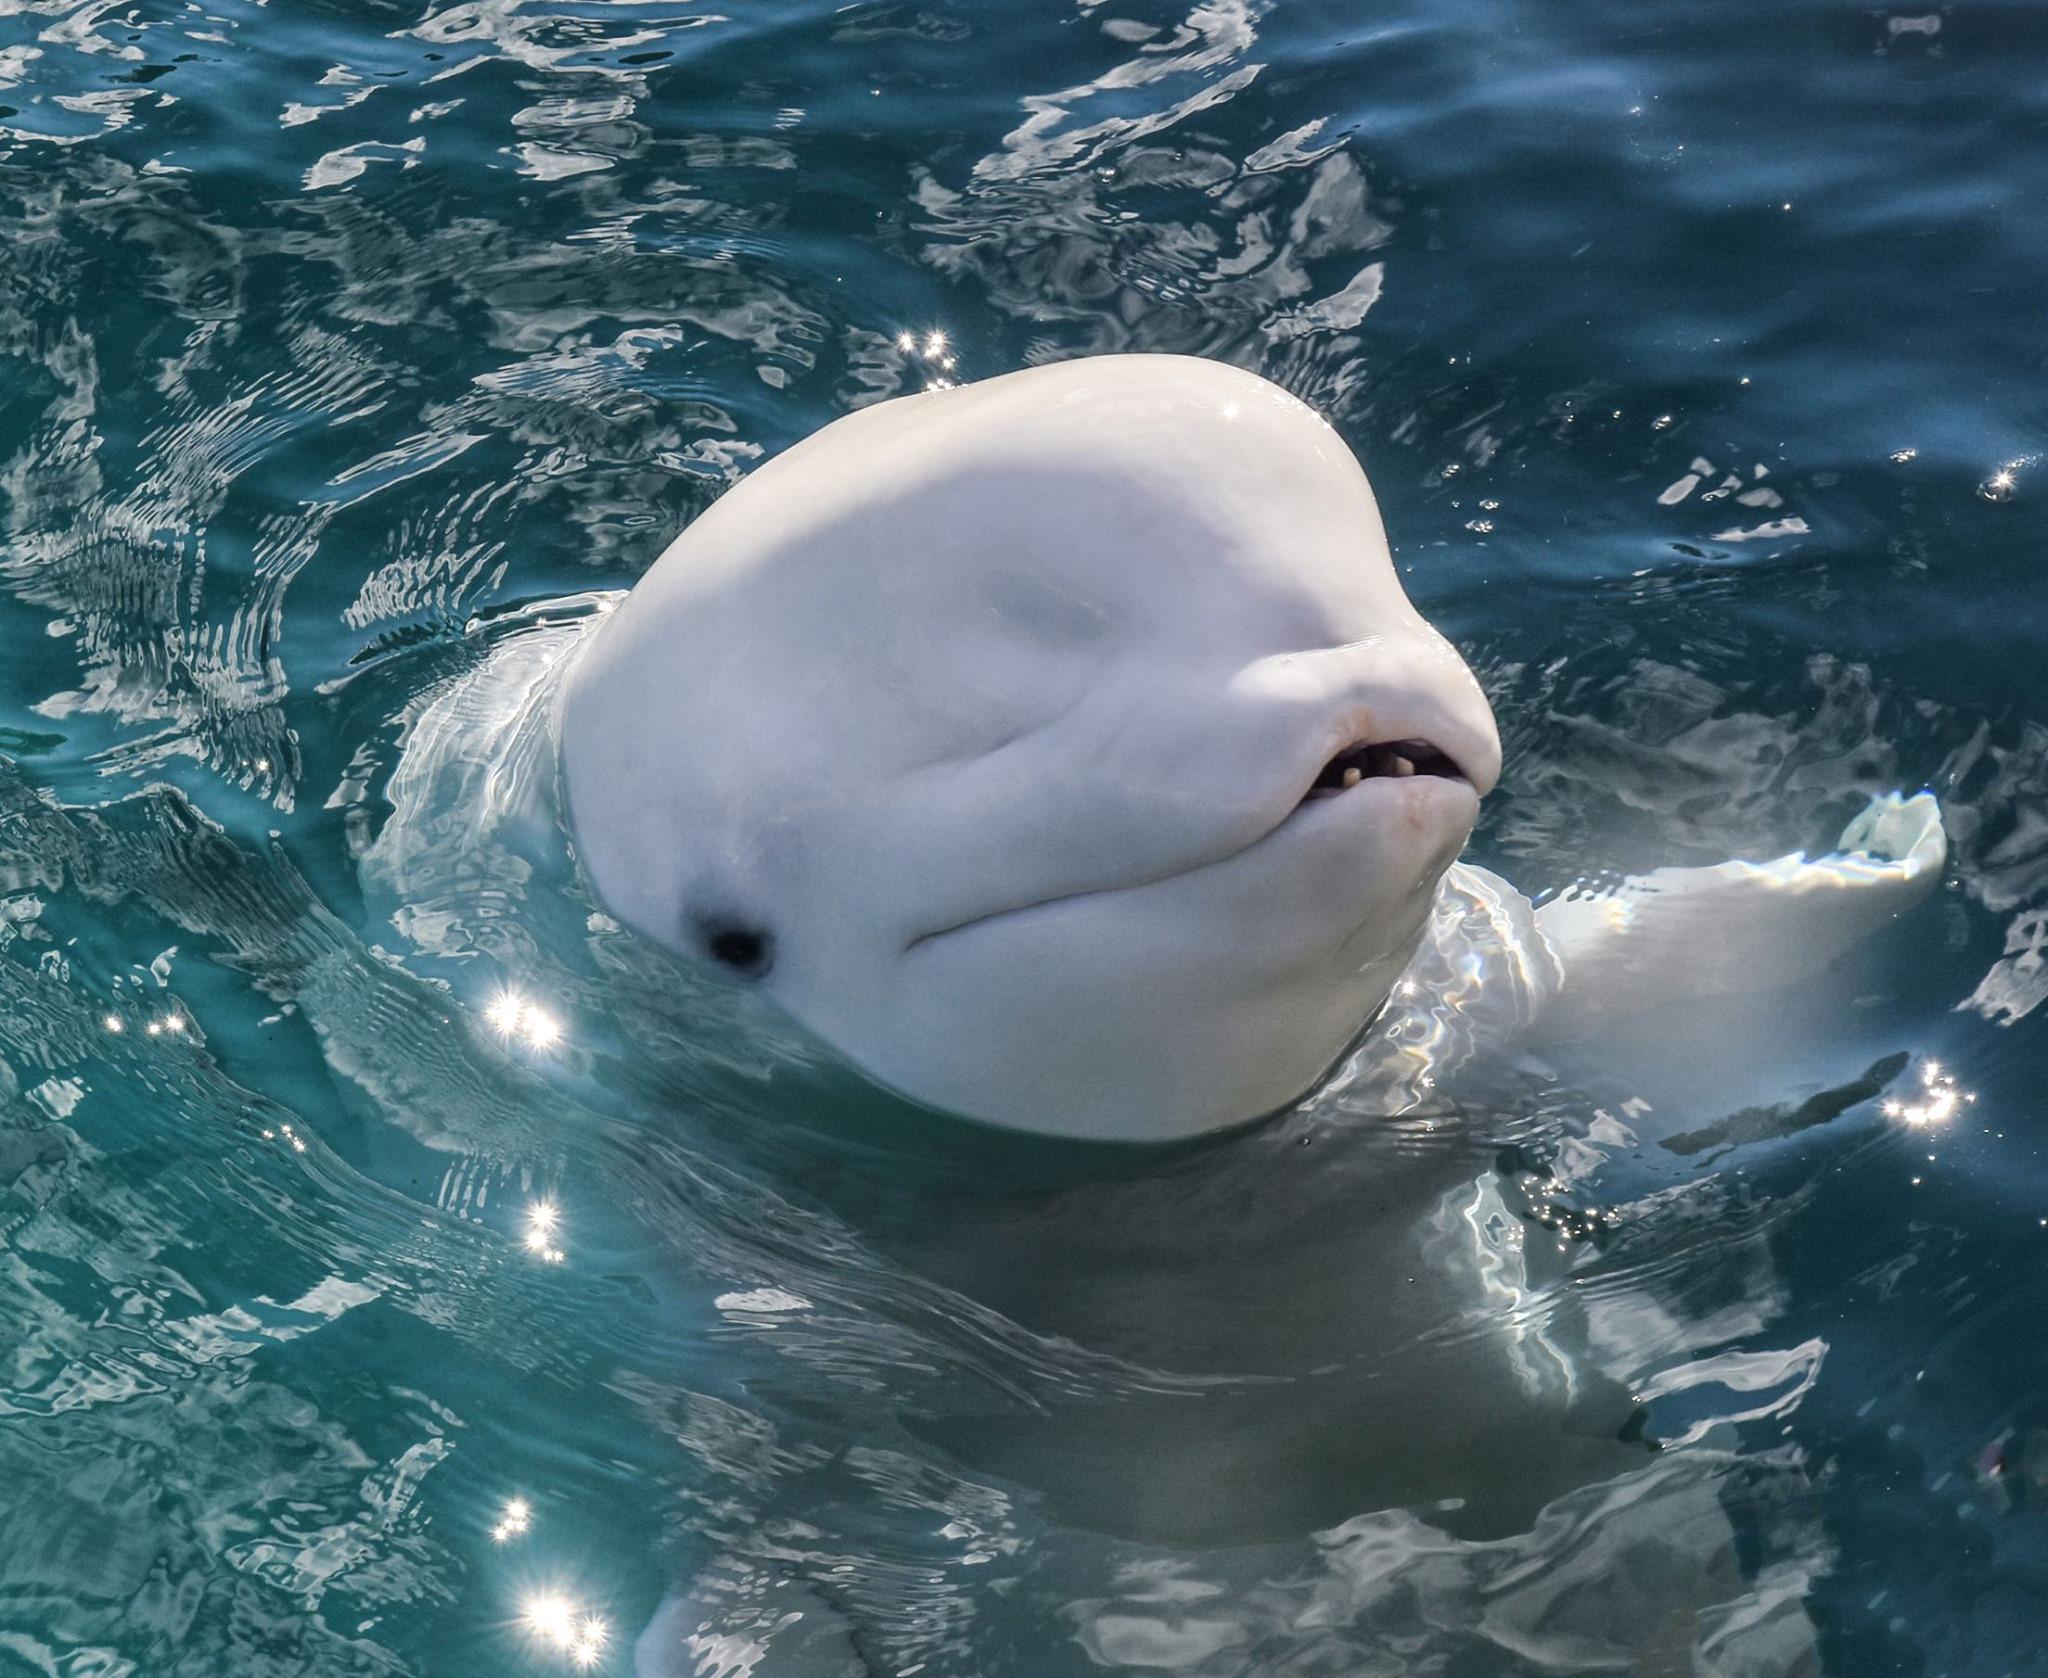 En detalle lo mismo Conquistar Second beluga whale dies at Mystic Aquarium